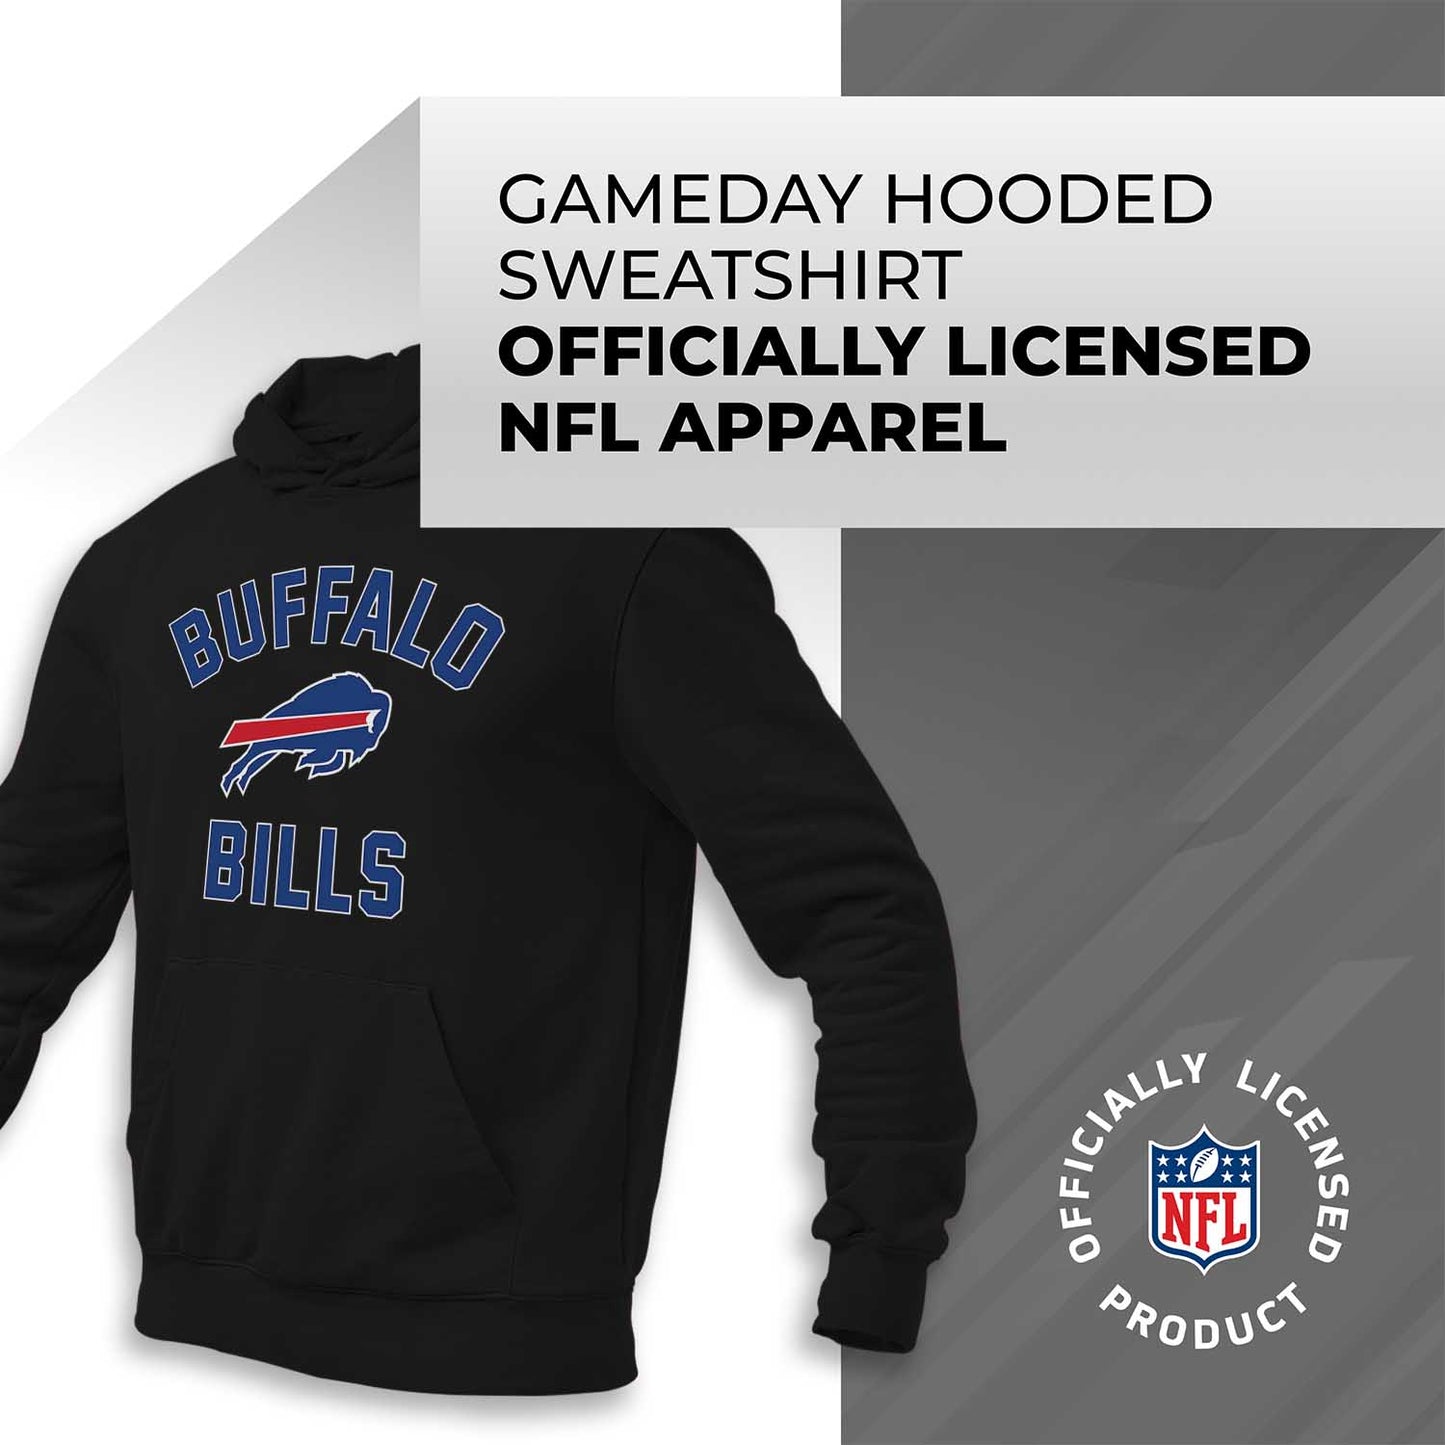 Buffalo Bills NFL Adult Gameday Hooded Sweatshirt - Black